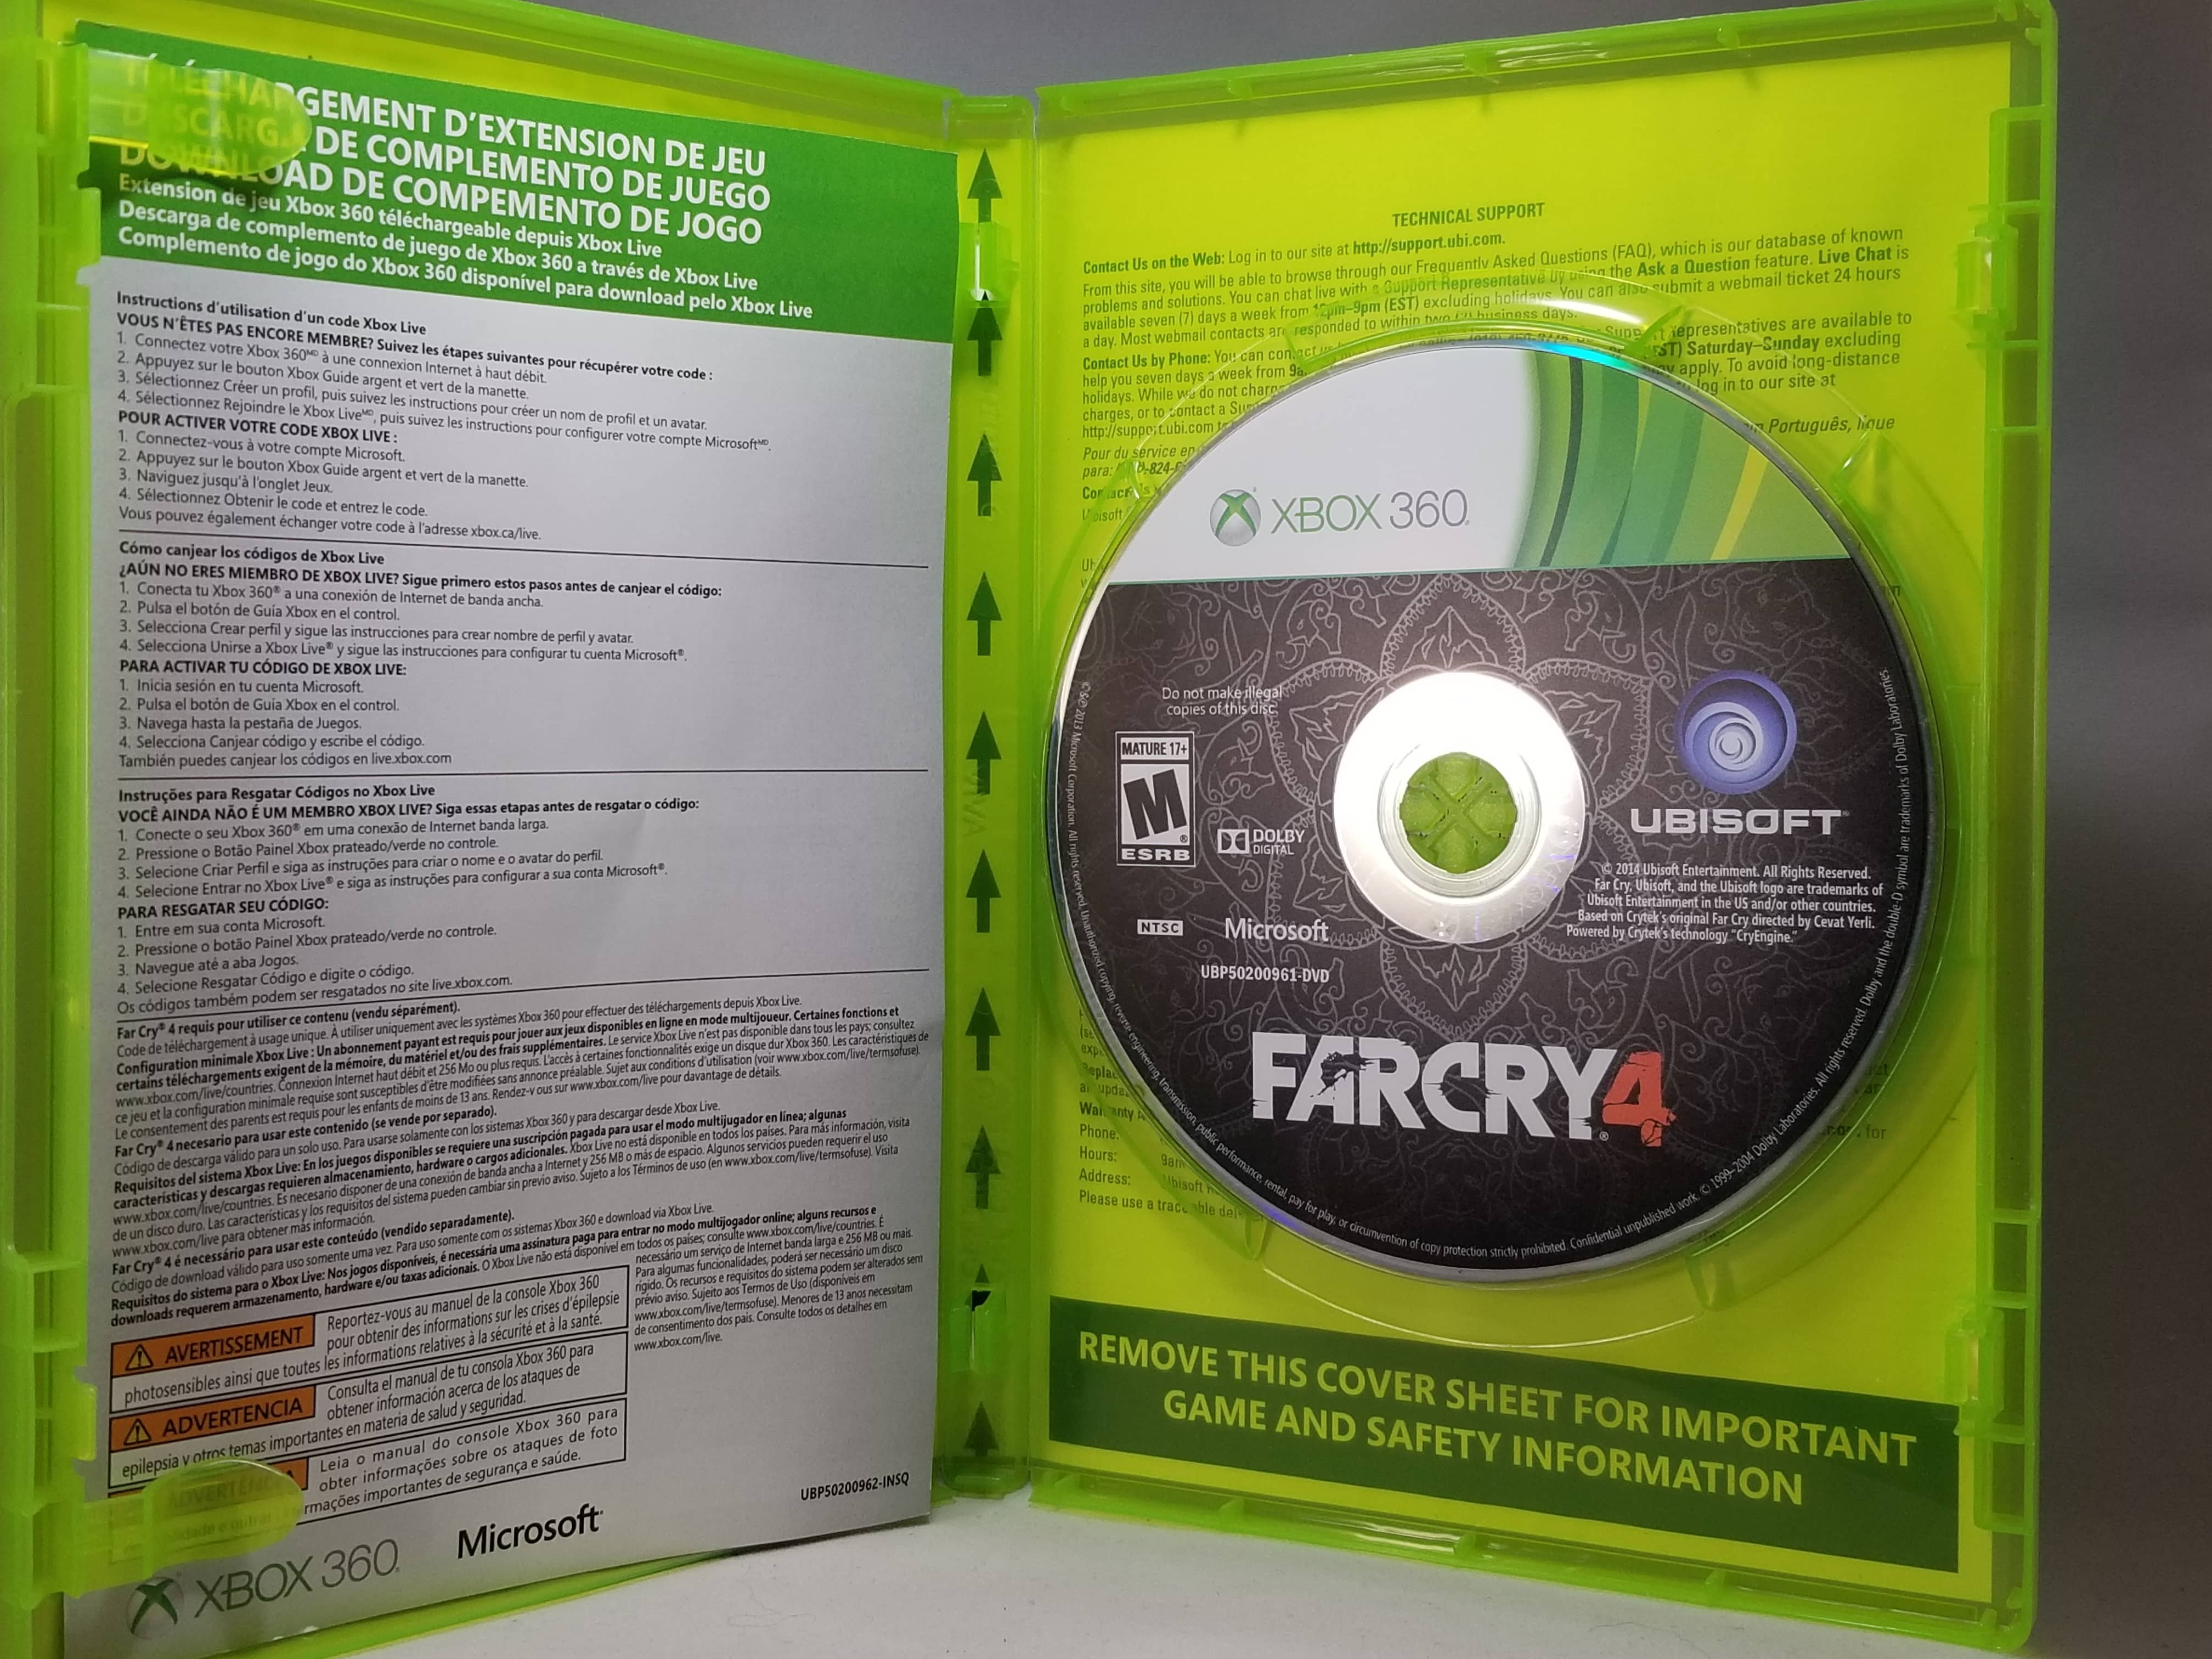 Far Cry 5  Playstation 4 - Geek-Is-Us